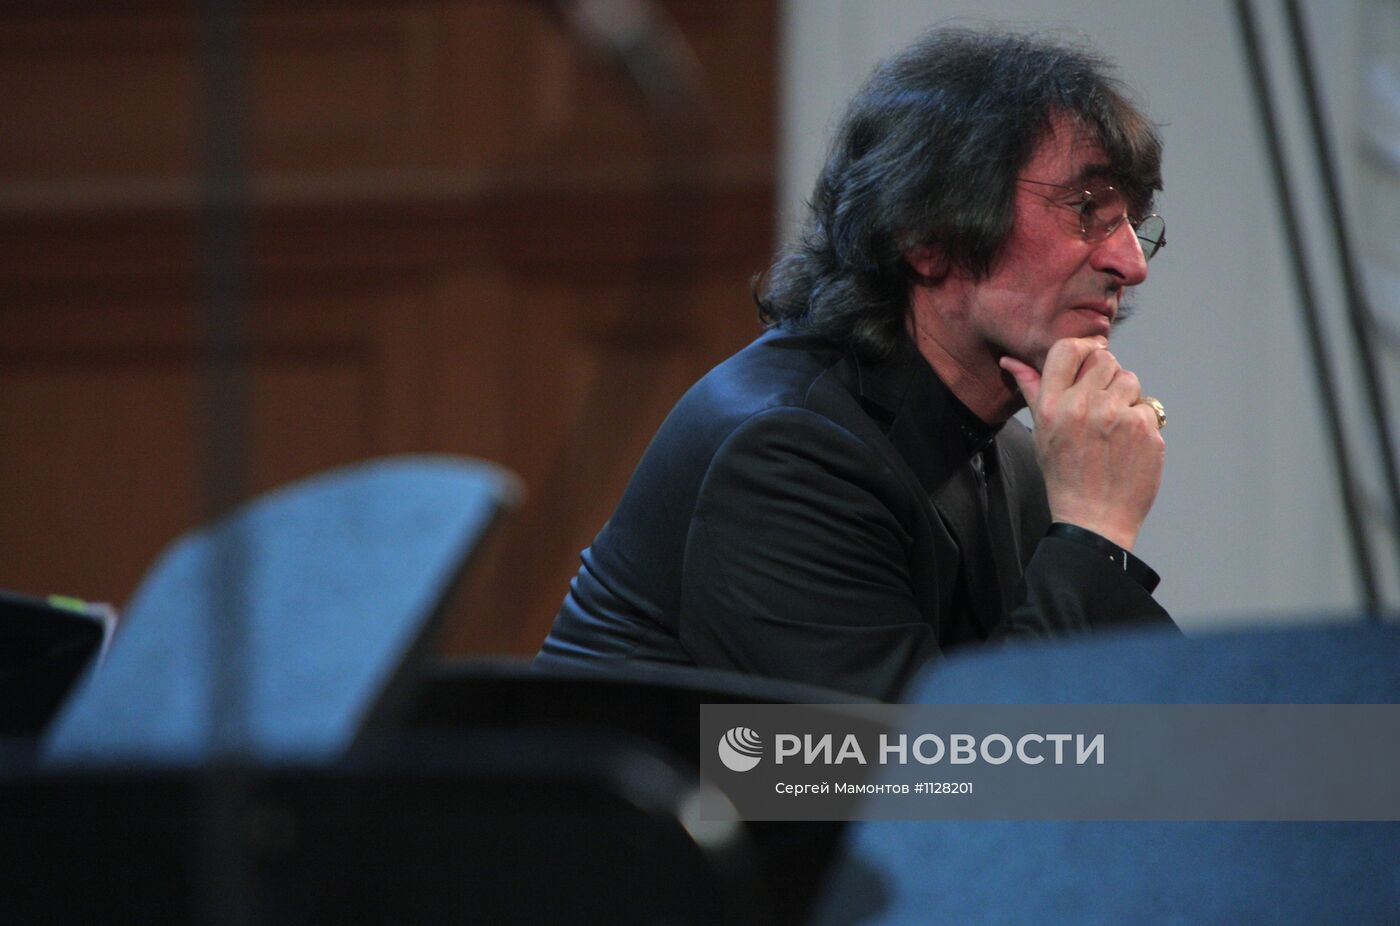 Юбилейный концерт ансамбля "Солисты Москвы"